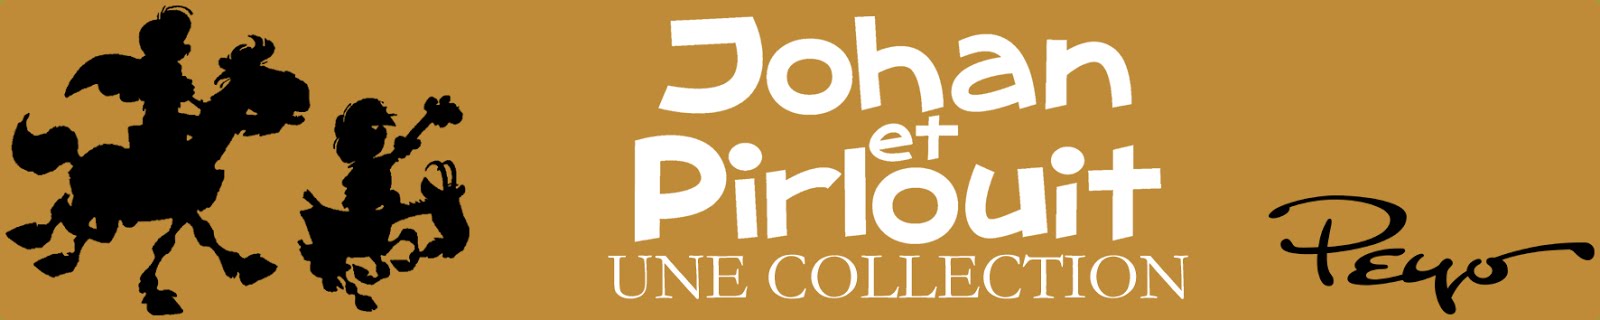 Johan et Pirlouit, une collection